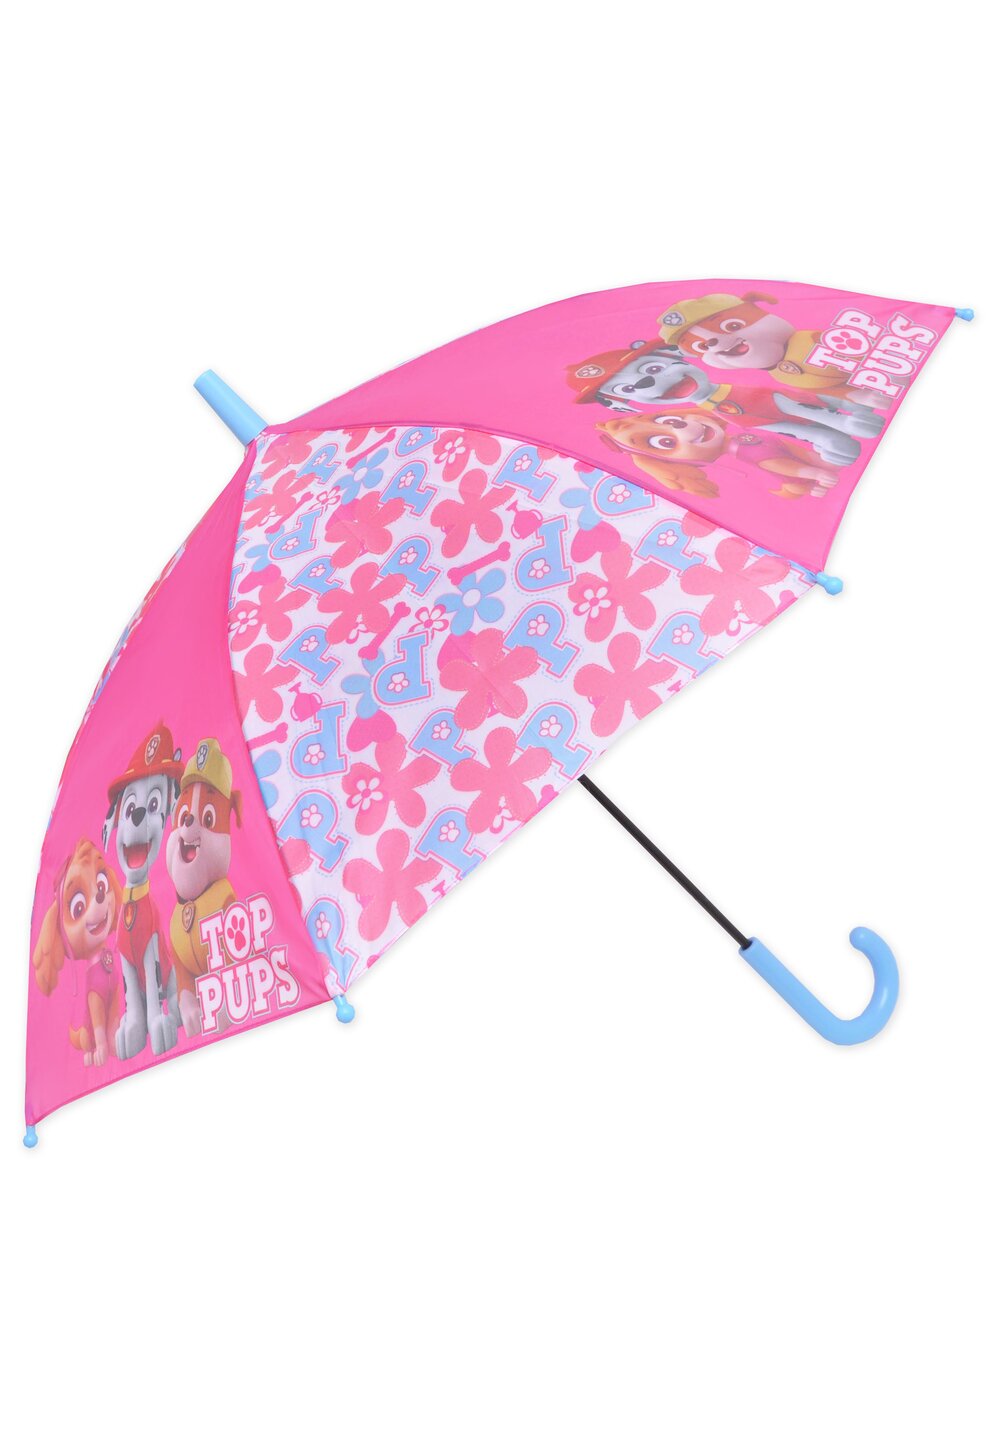 Umbrela, Top pups, roz accesorii